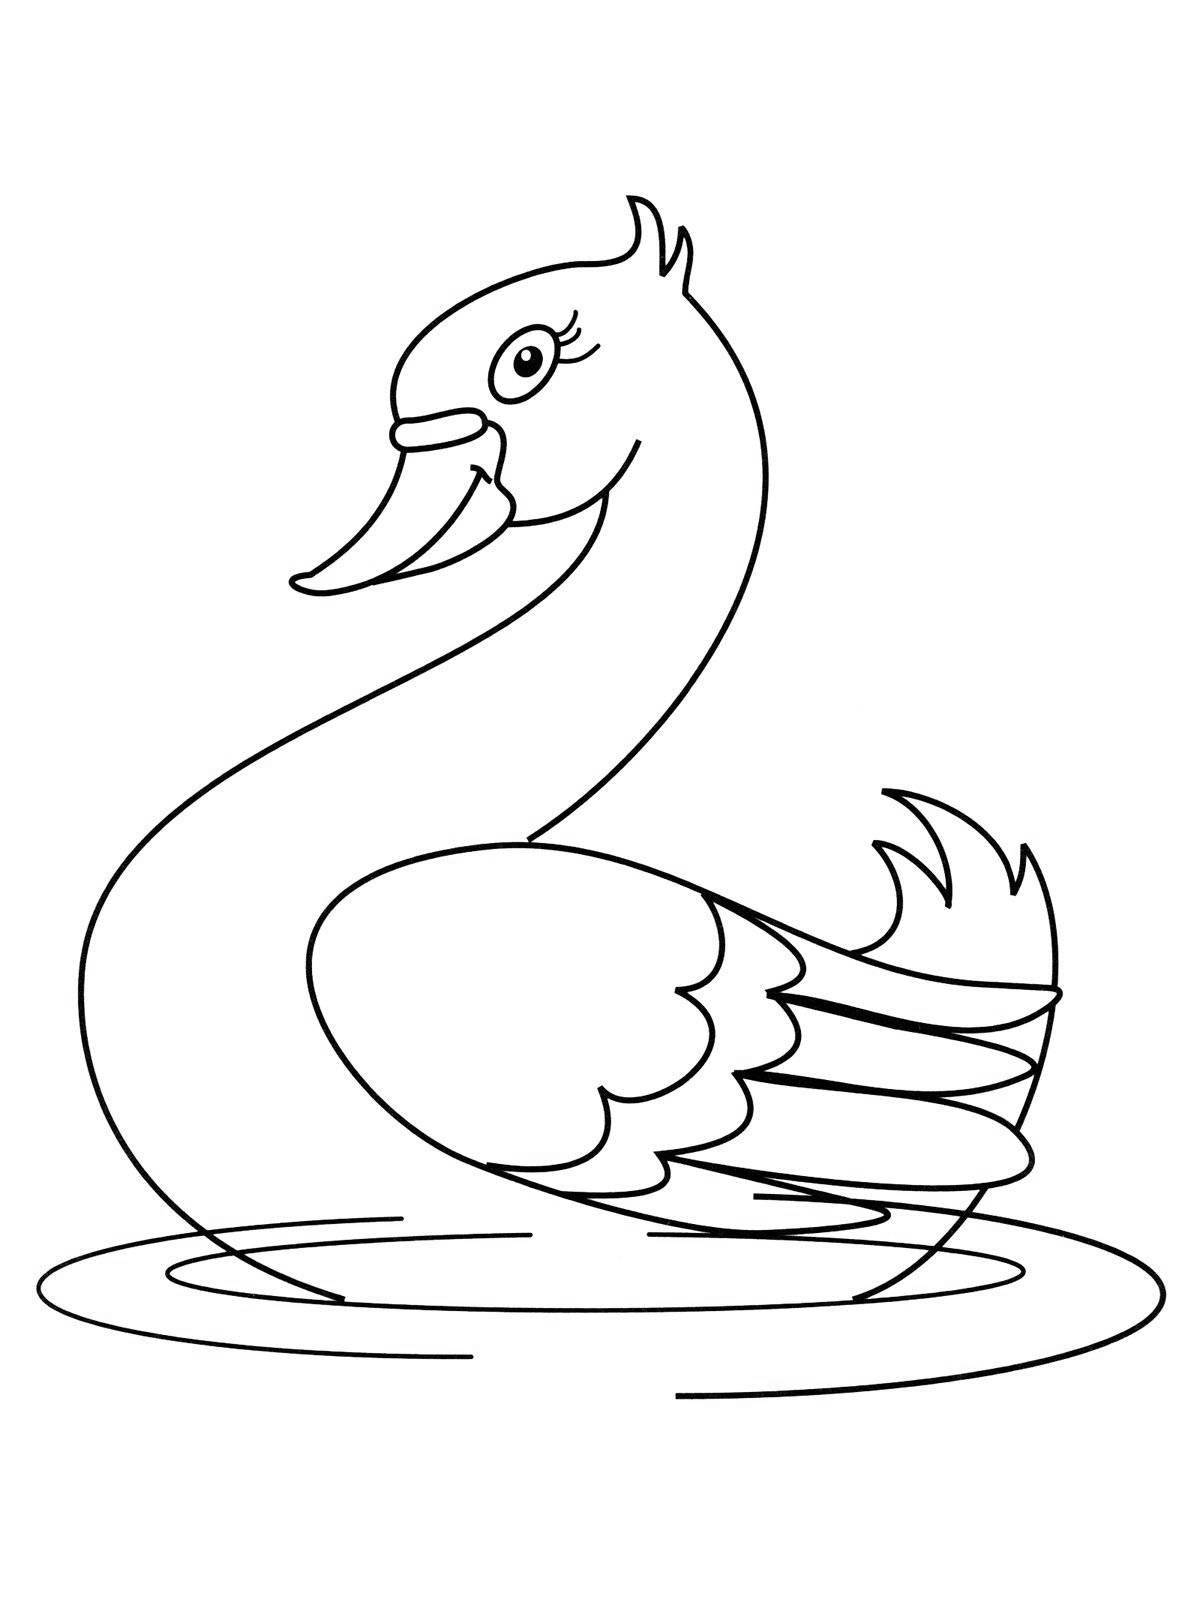 Happy coloring princess swan